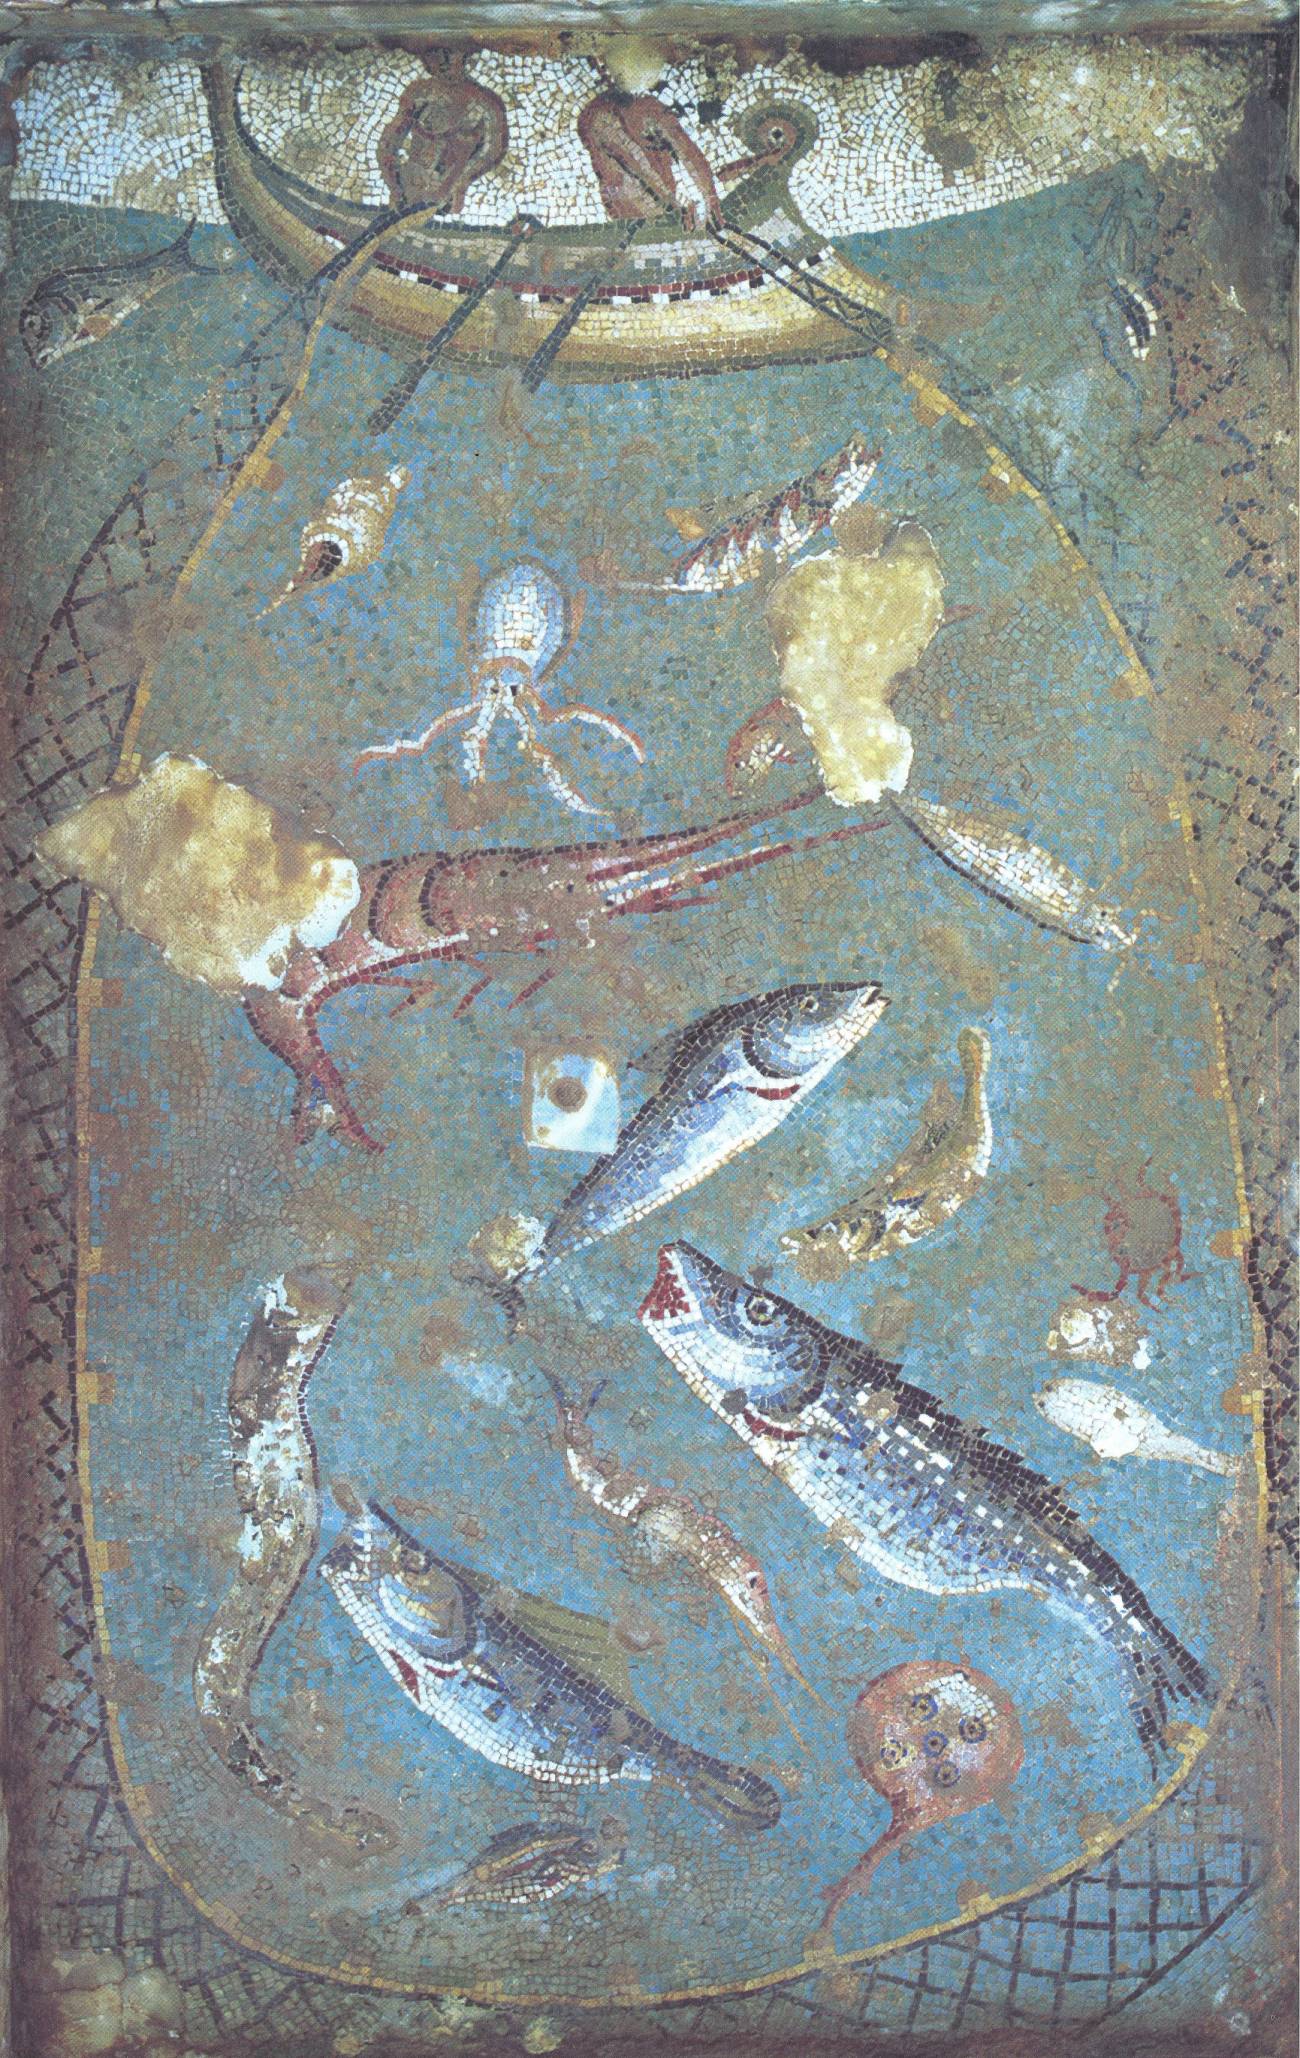 Técnicas de pesca según un antiguo mosaico romano